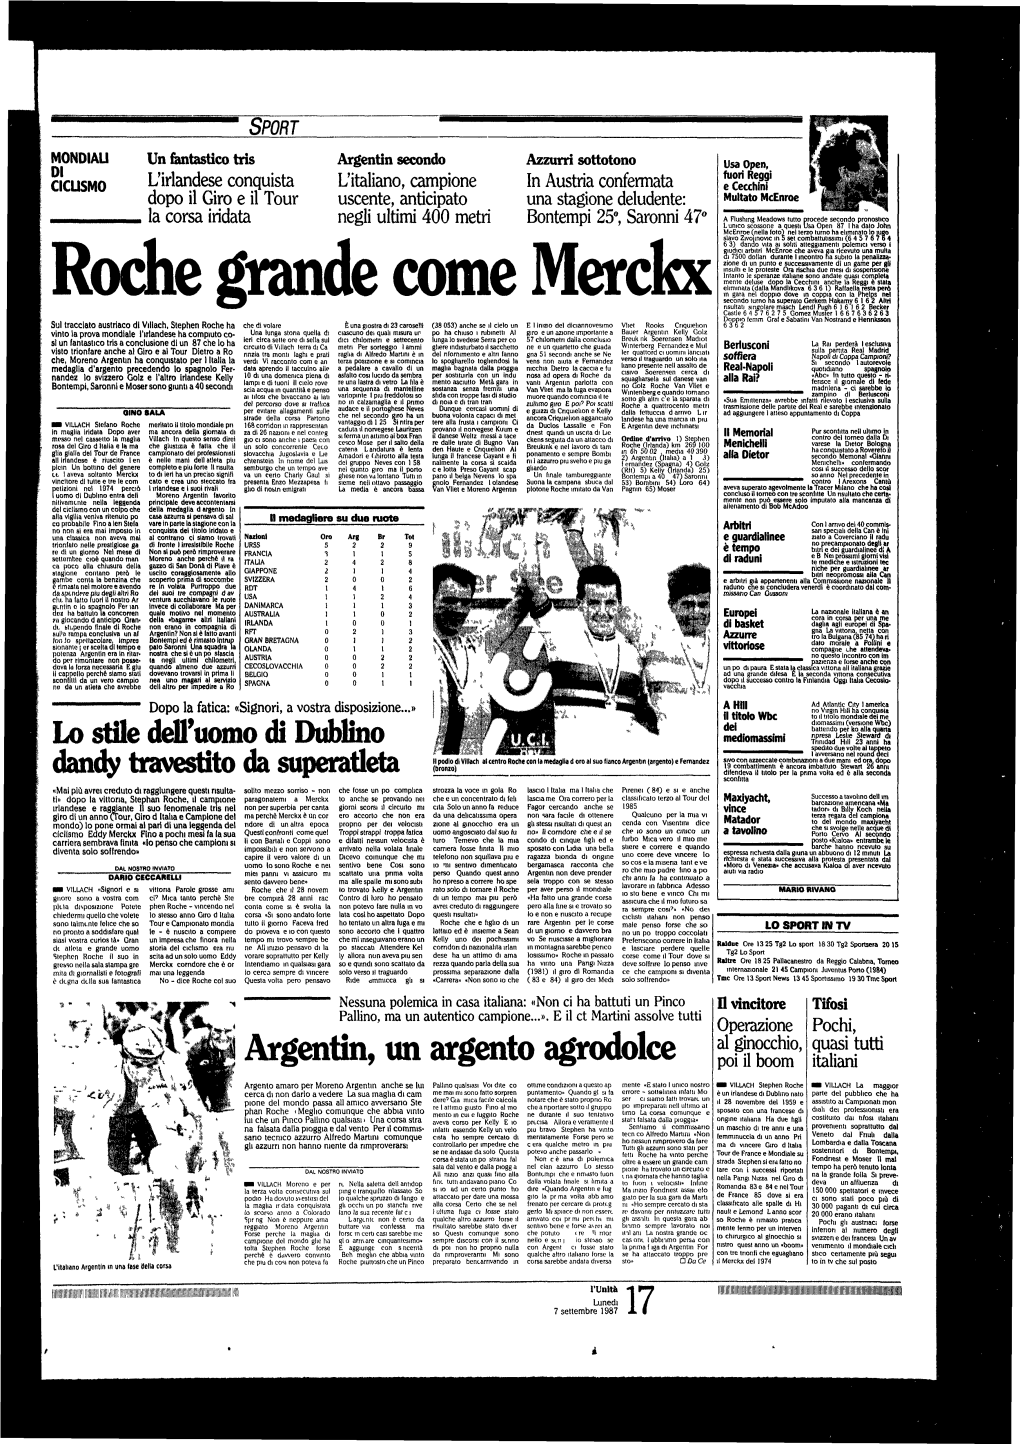 Roche Grande Come Merckx